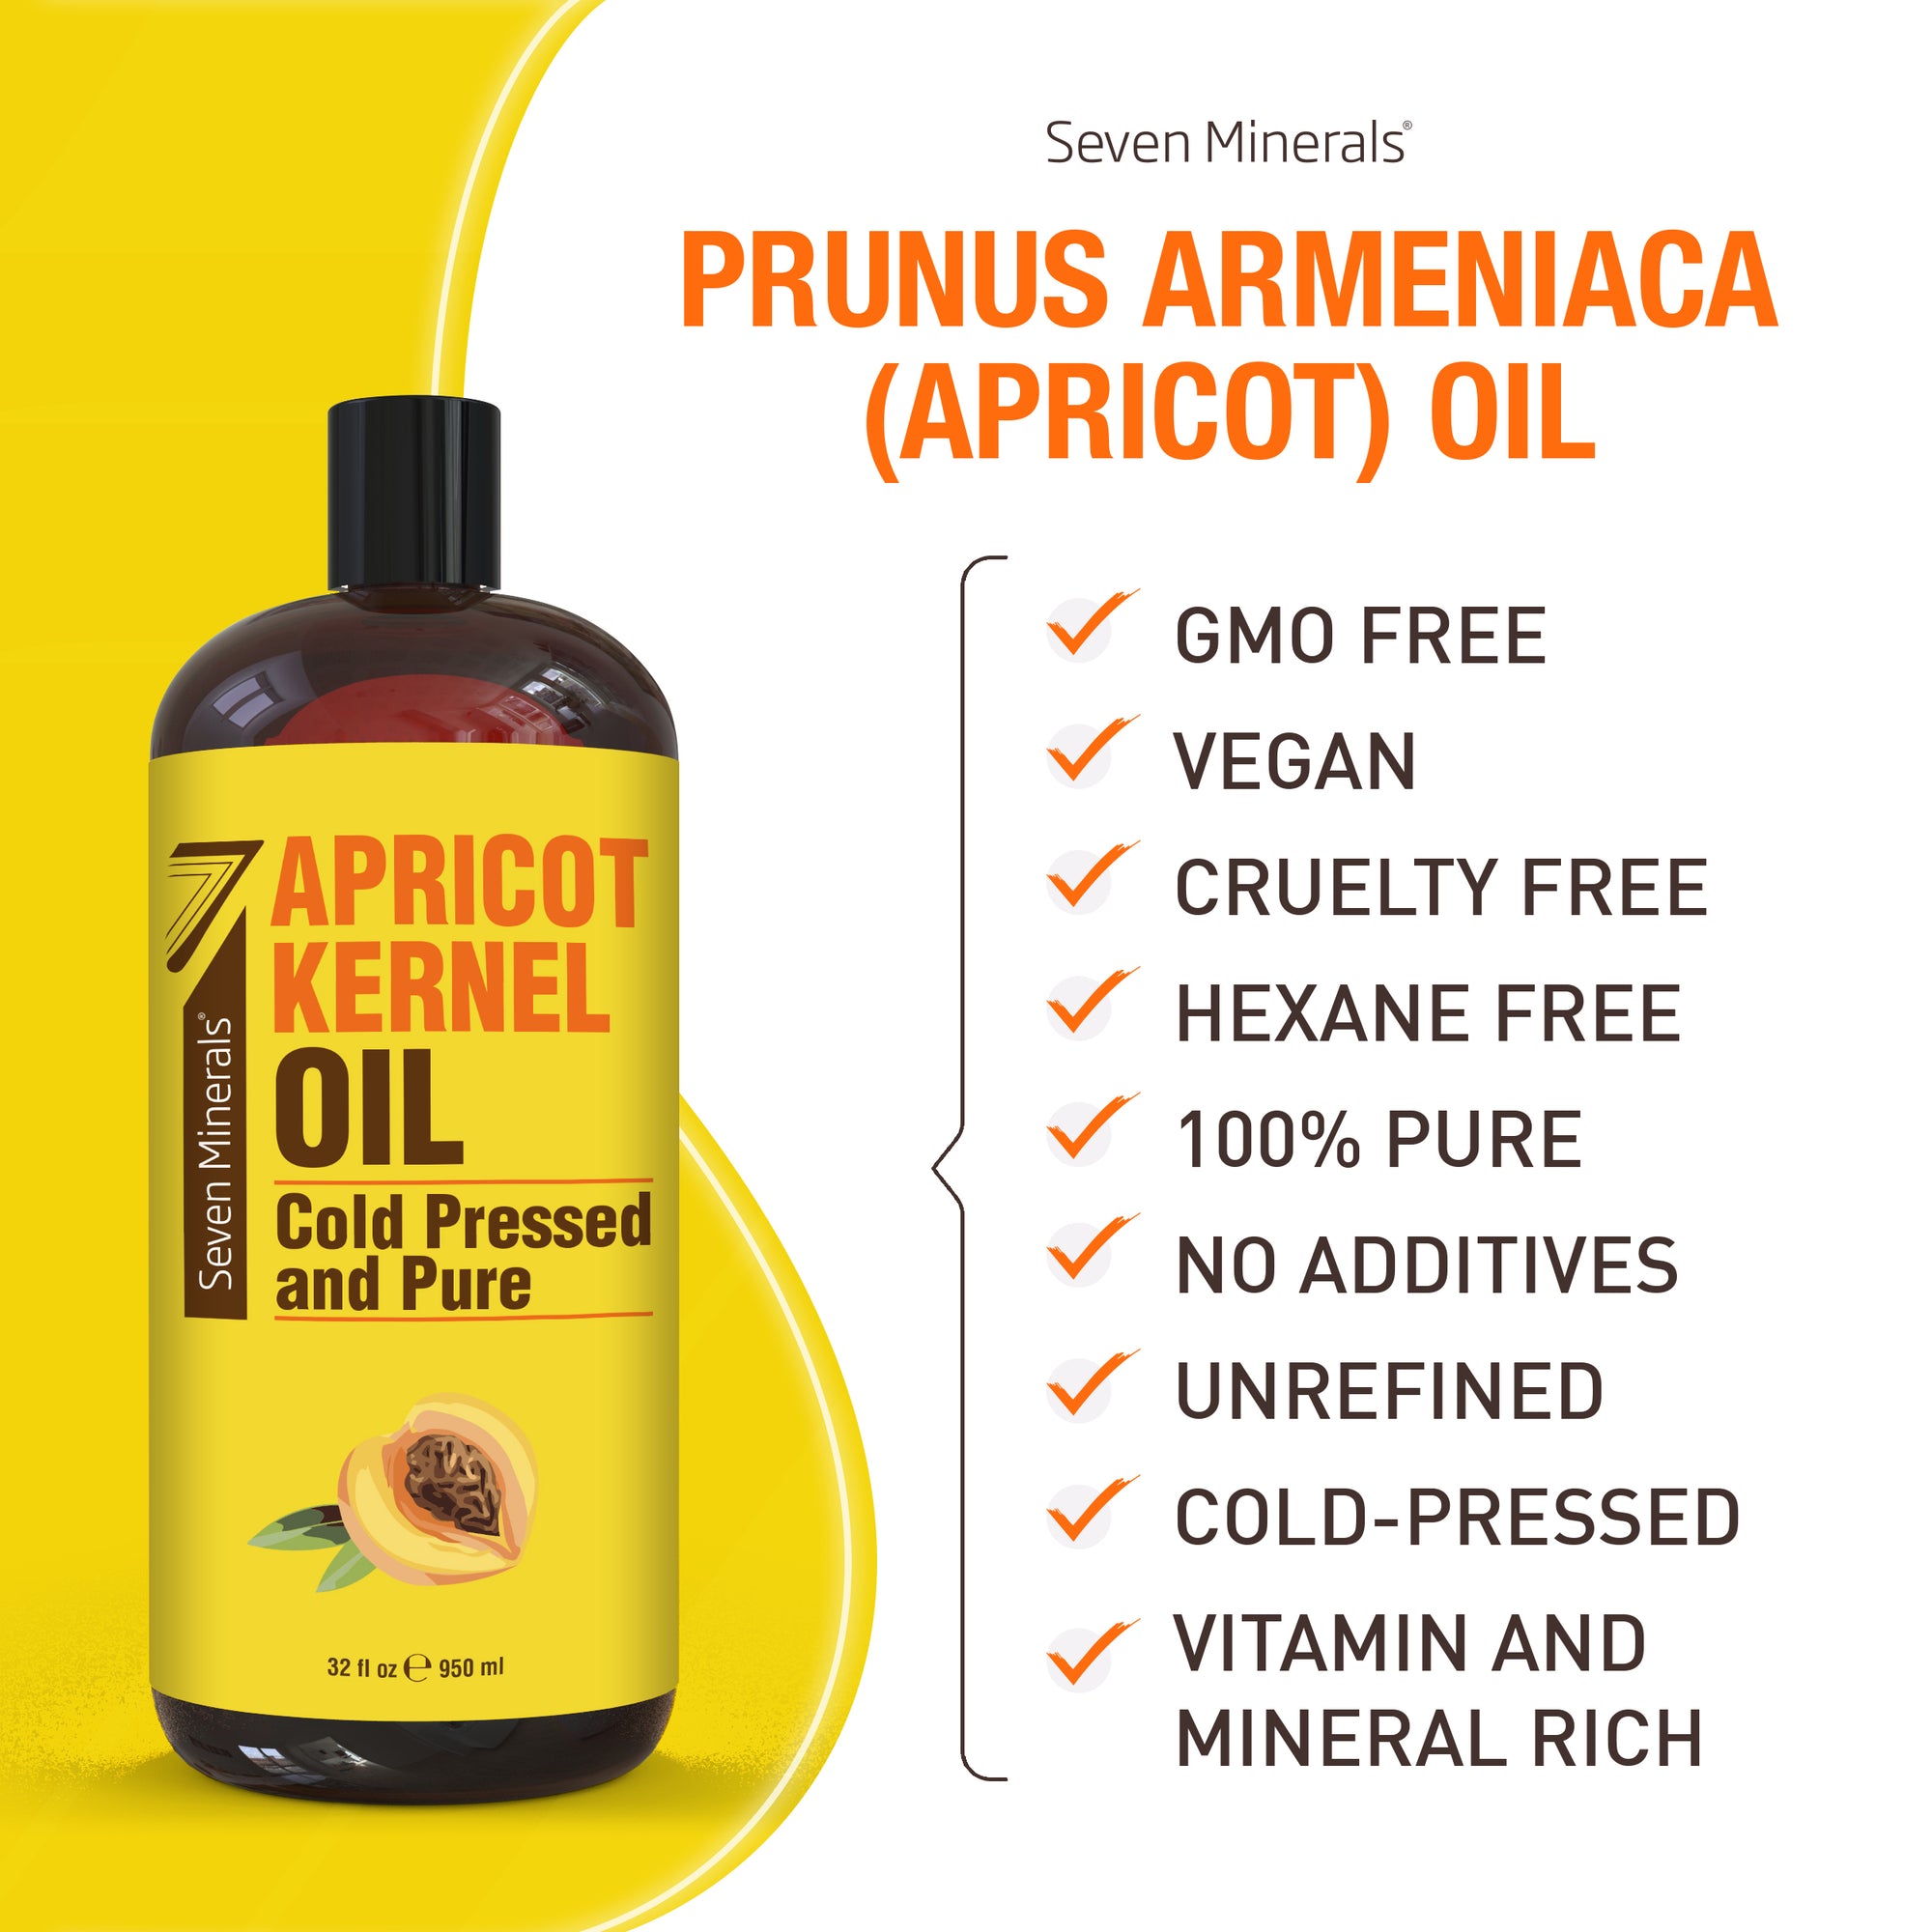 GMO free, vegan, cruelty free apricot oil